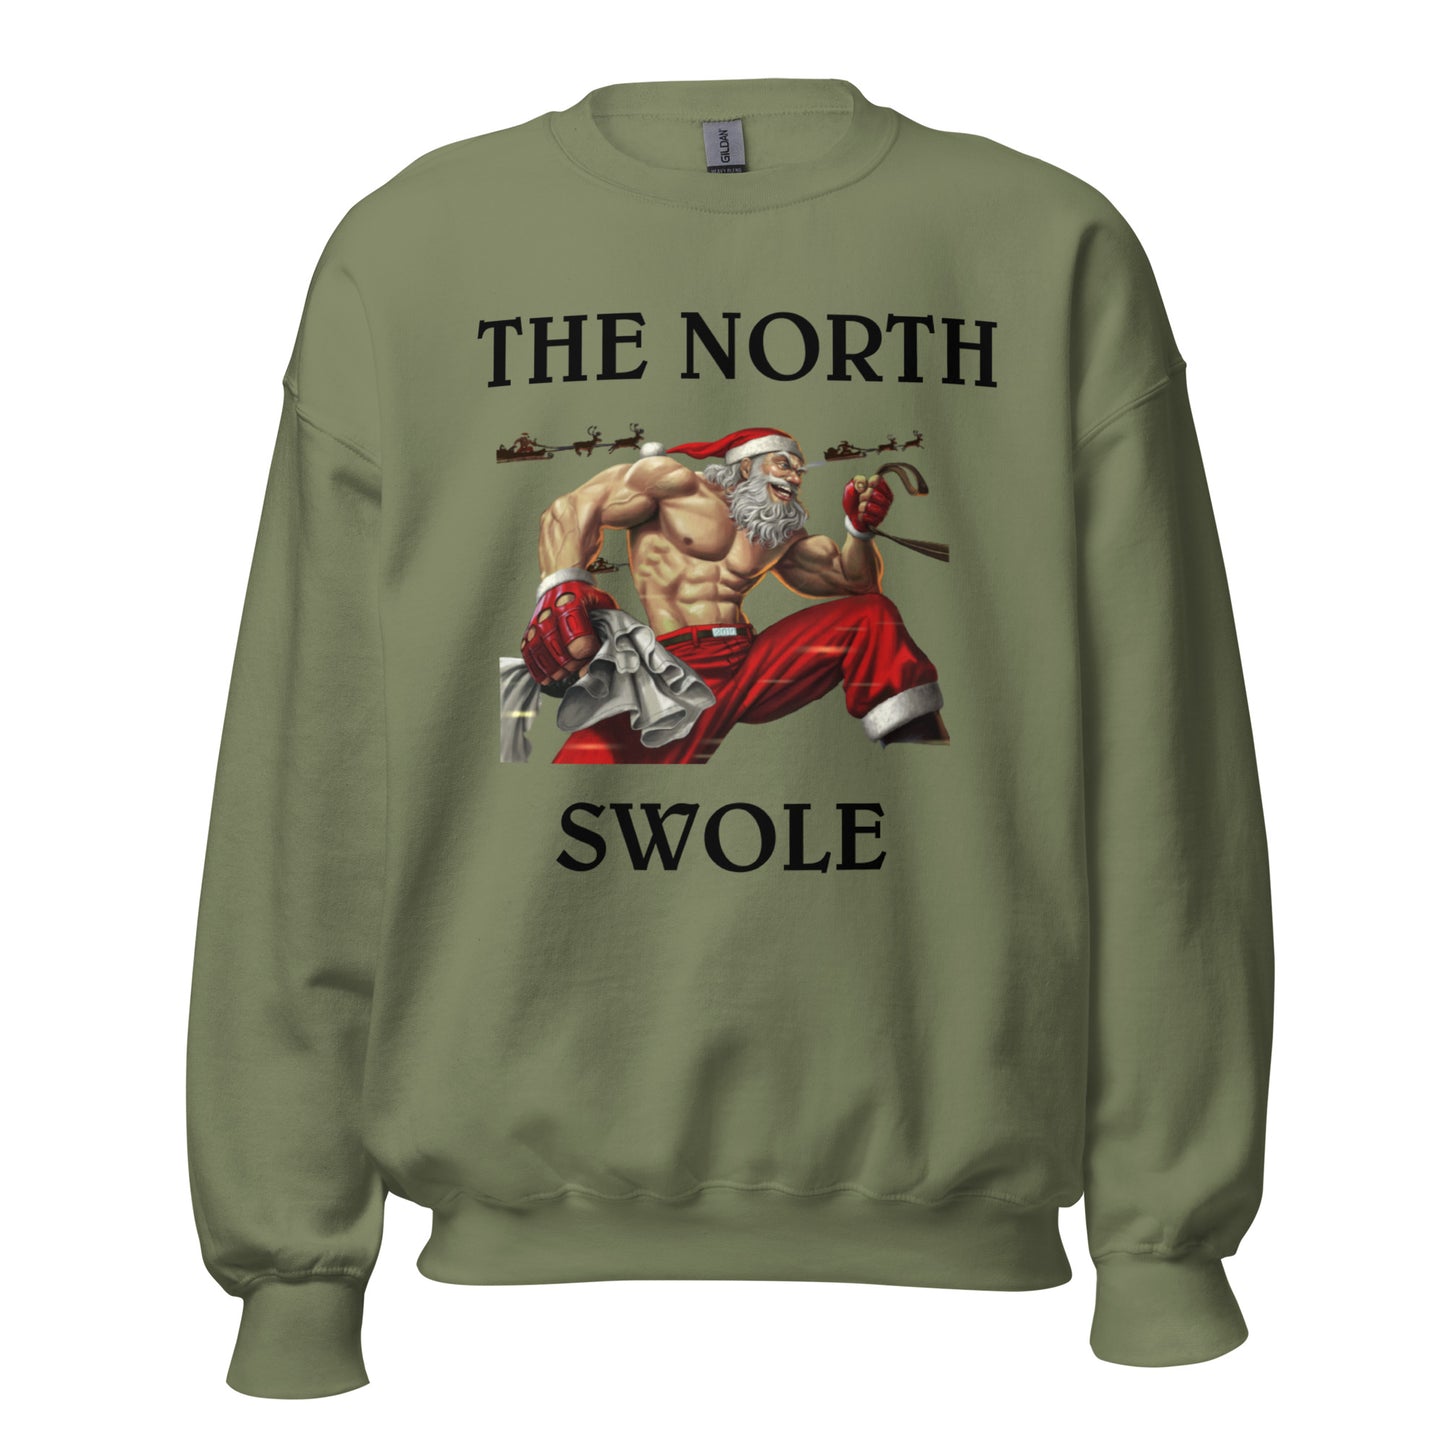 THE NORTH SWOLE